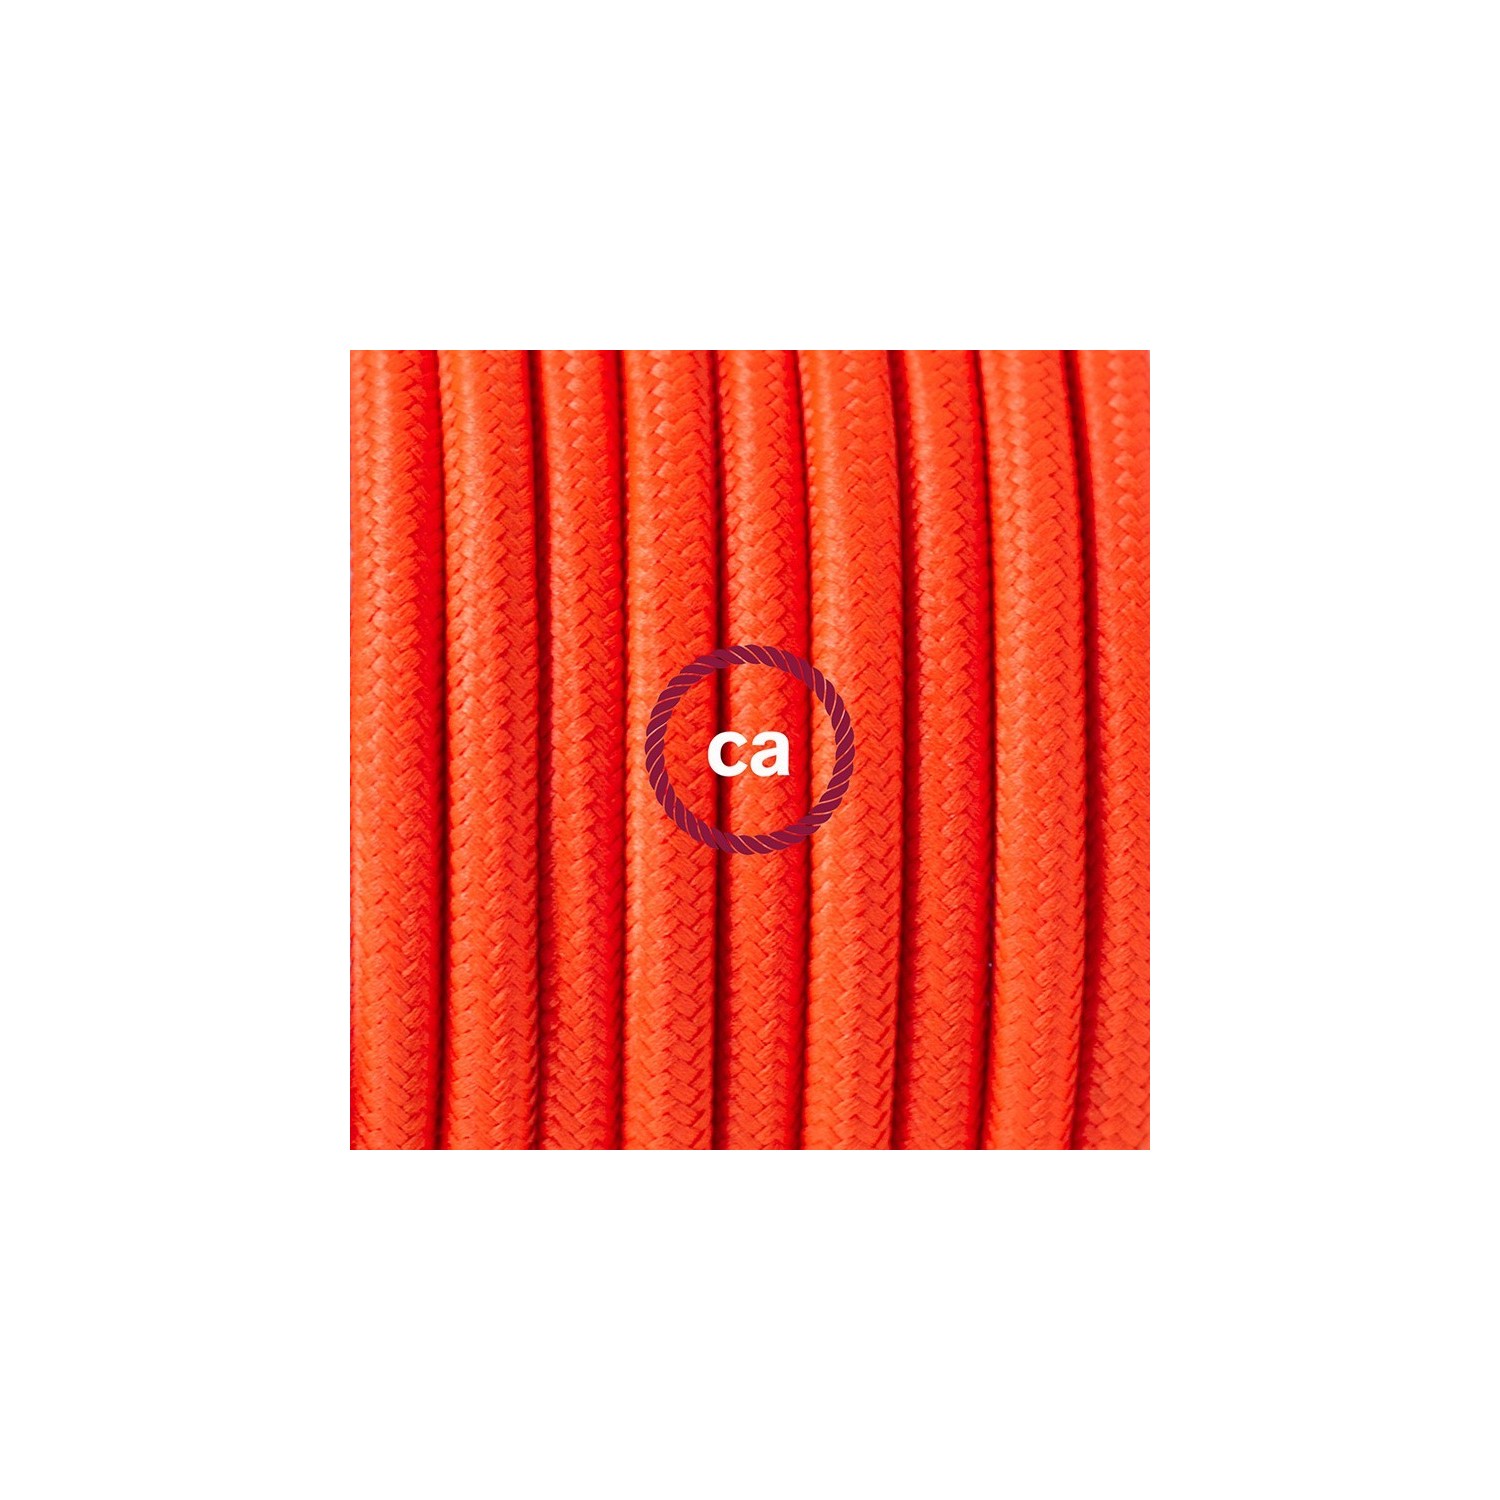 Cordon pour lampadaire, câble RF15 Effet Soie Orange Fluo 3 m. Choisissez la couleur de la fiche et de l'interrupteur!